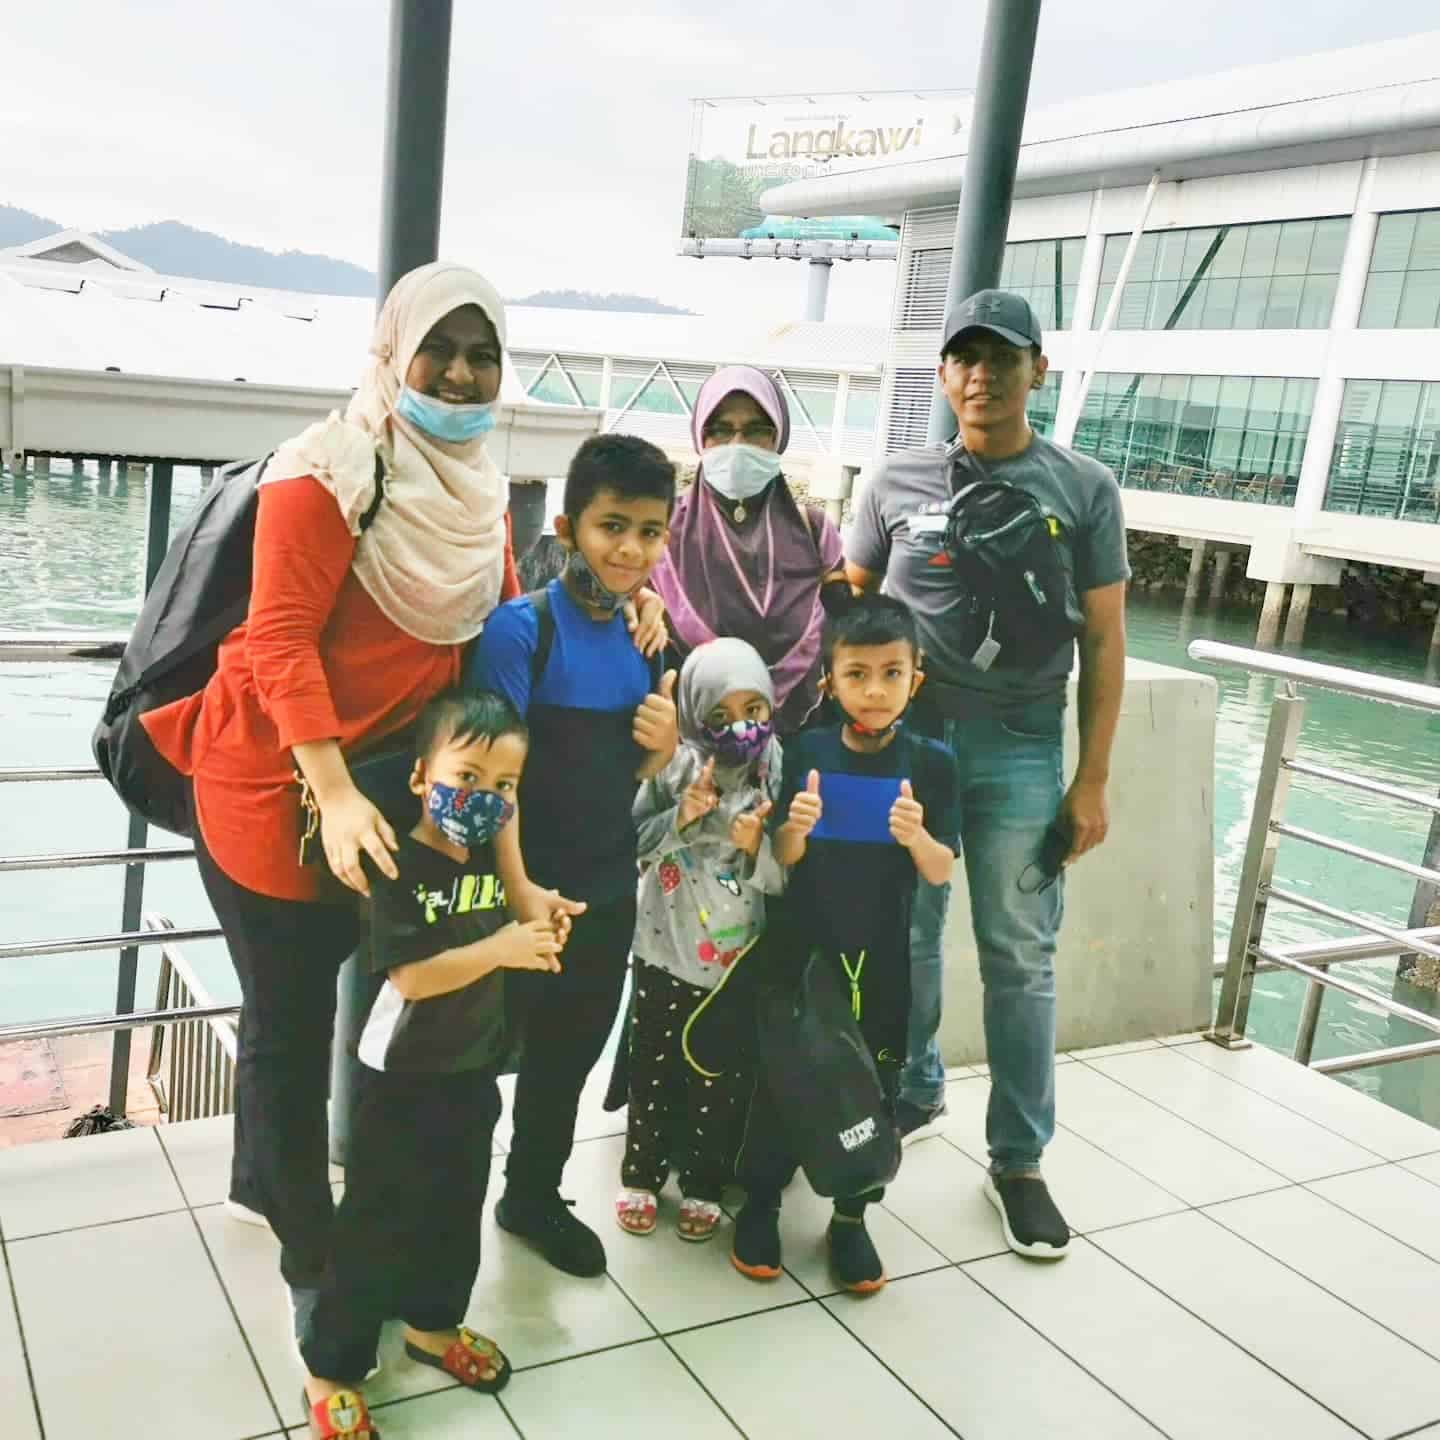 percutian ke Langkawi bersama keluarga - utamakan SOP dan keselamatan diri.